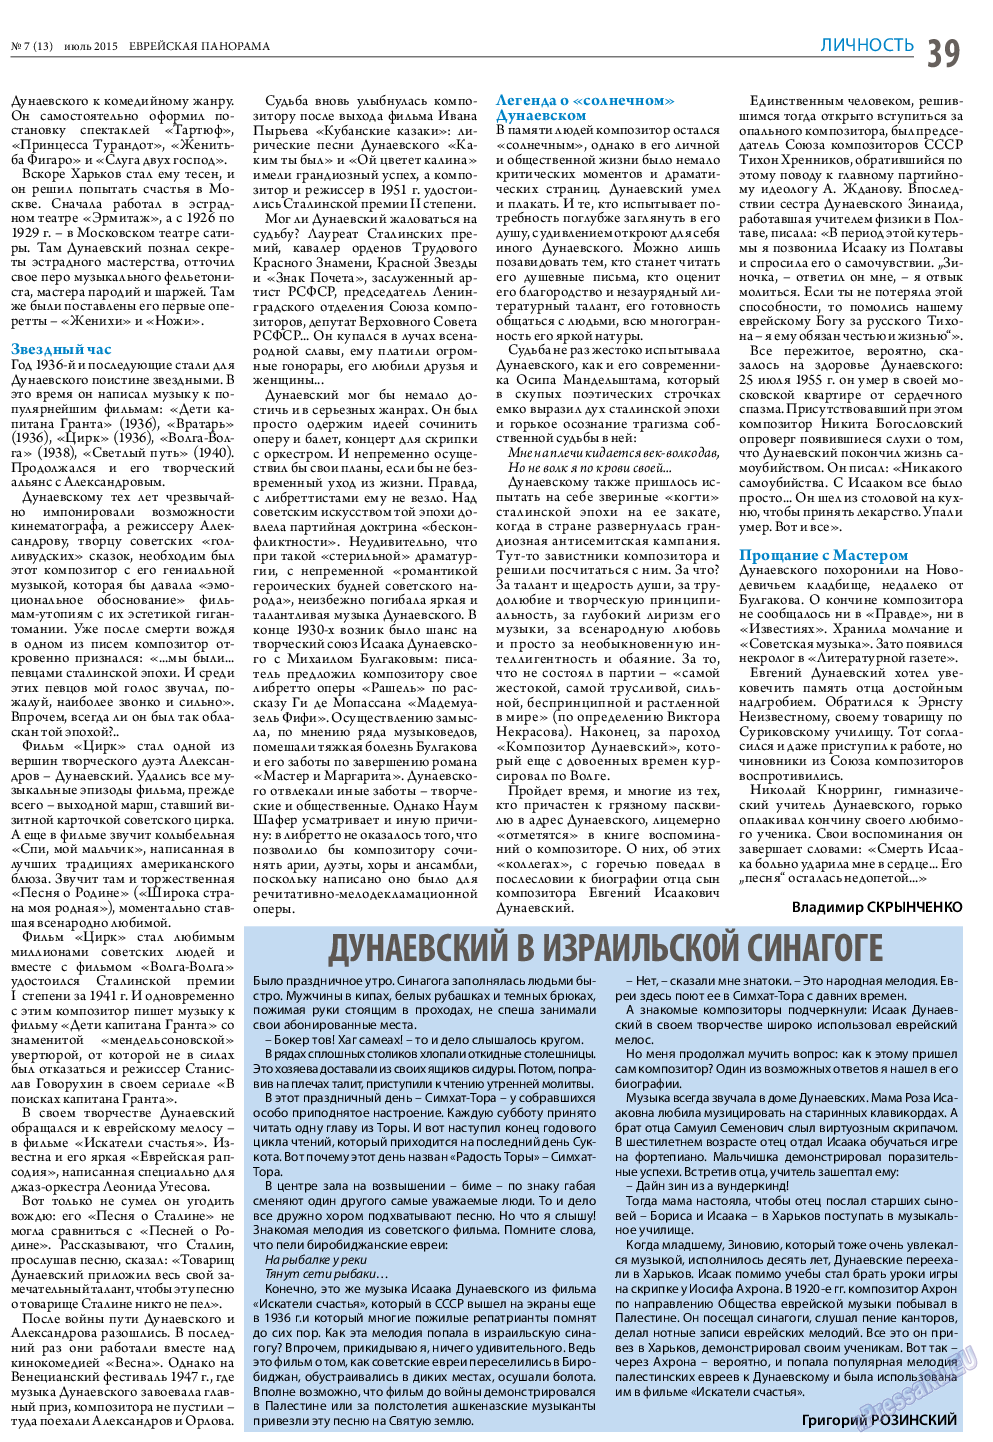 Еврейская панорама (газета). 2015 год, номер 7, стр. 39